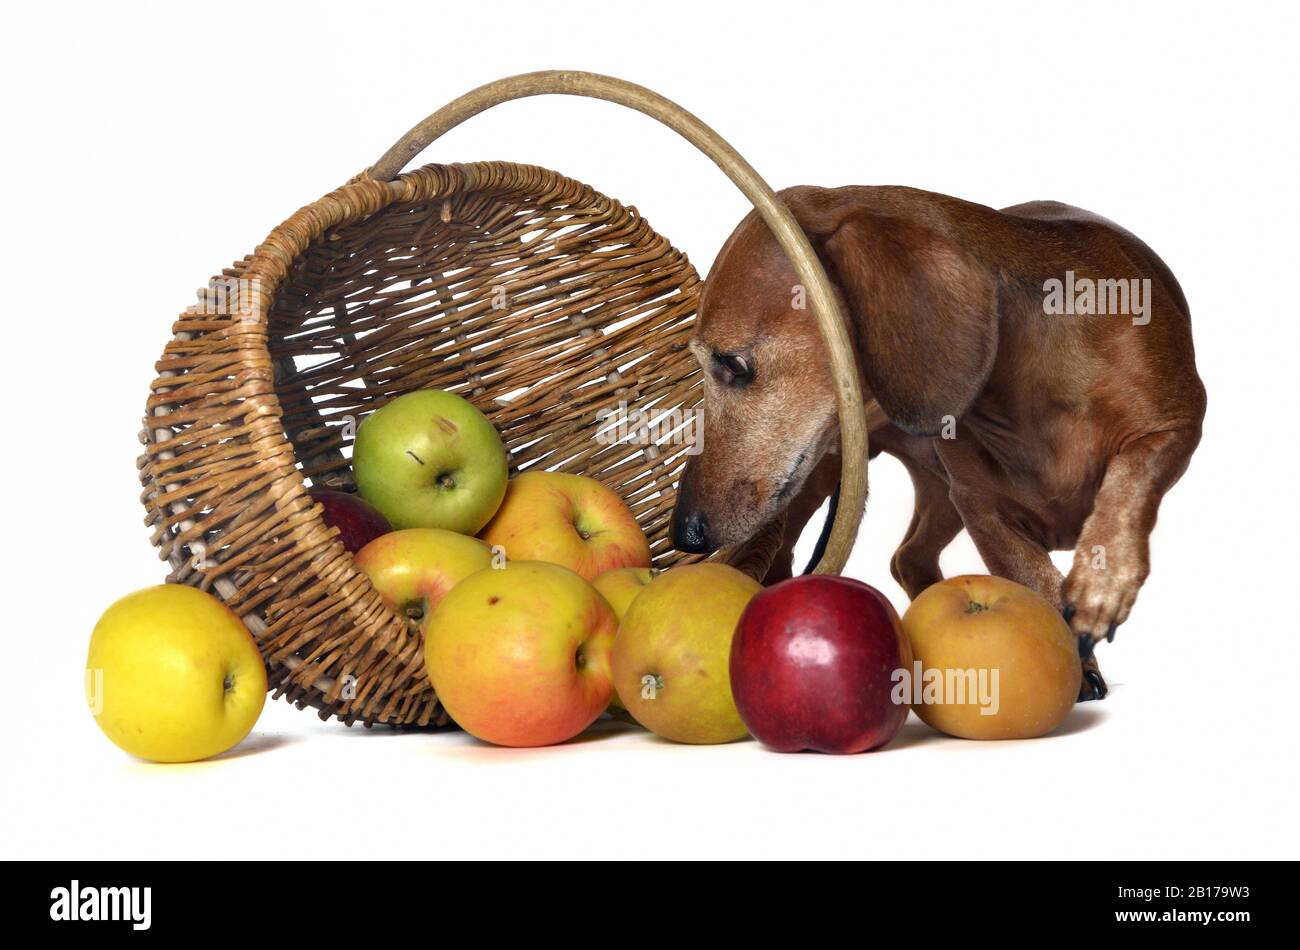 Kurzhaariger Dachshund, Kurzhaariger Wursthund, Haushund (Canis lupus f. familiaris), Männchen schaut kurioserweise aus einem apfelkorb heraus Stockfoto